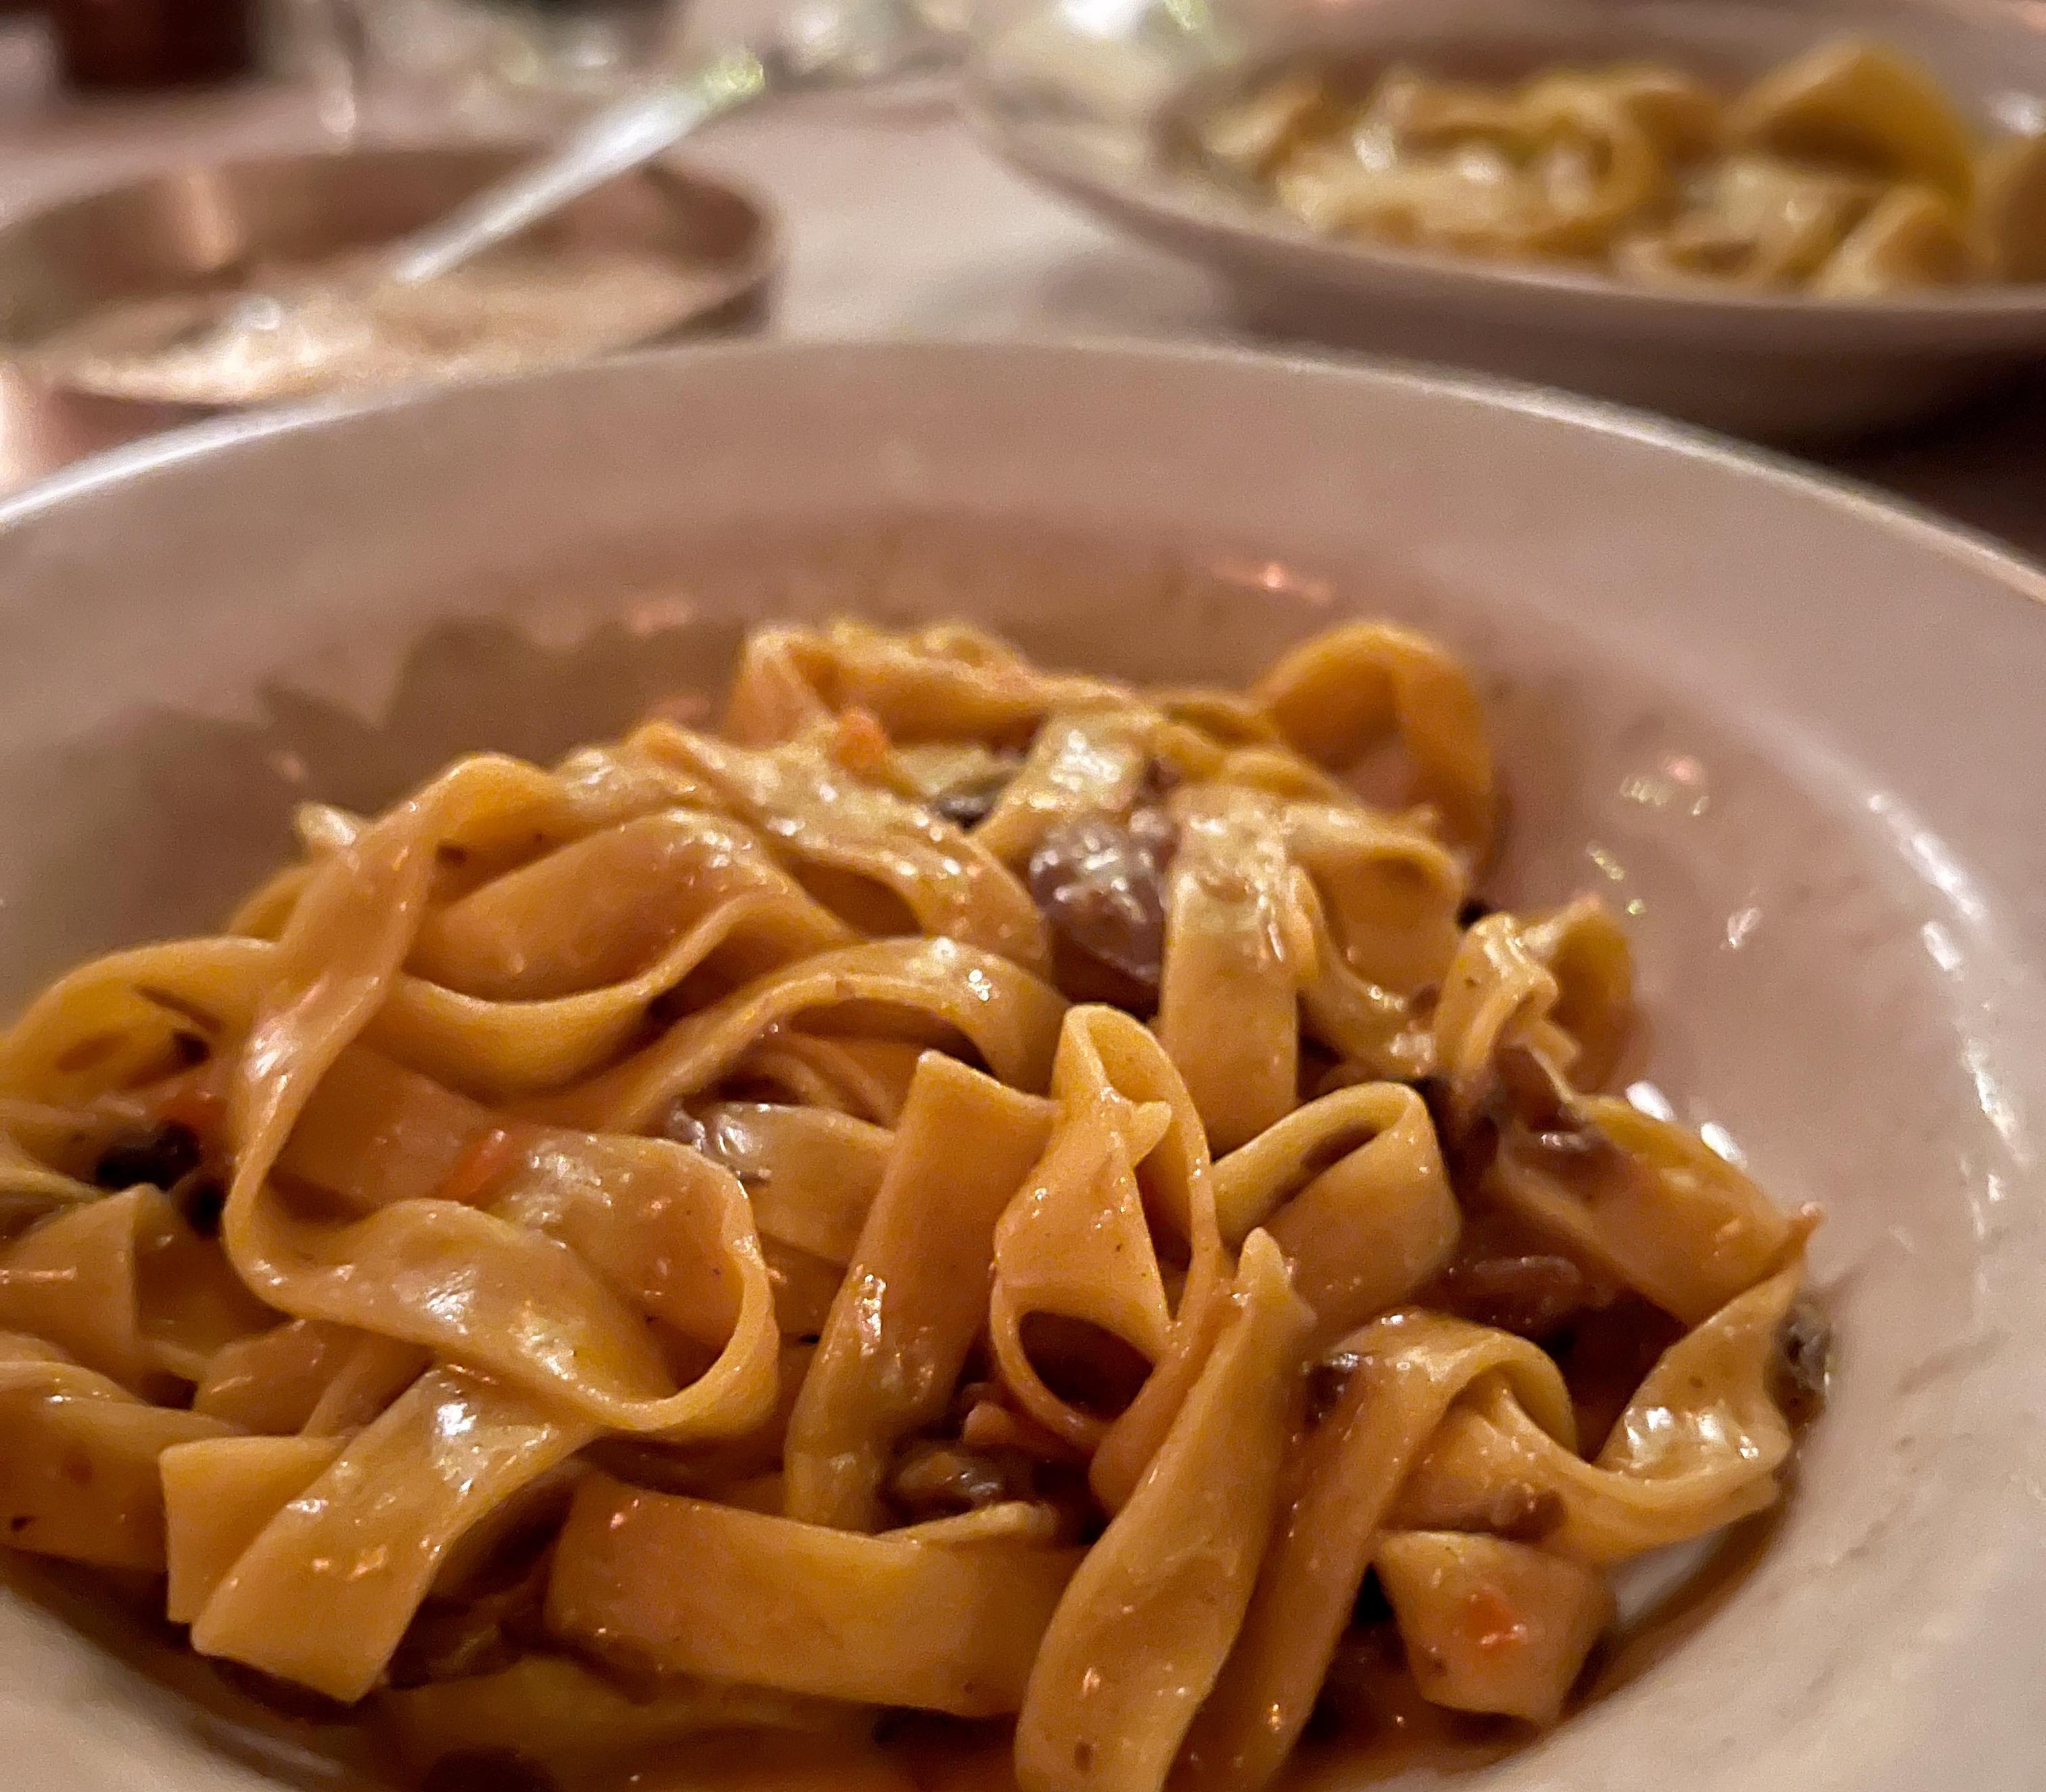 Tagliatelle pasta with chestnut and chanterelle mushrooms at Trattoria Brutto